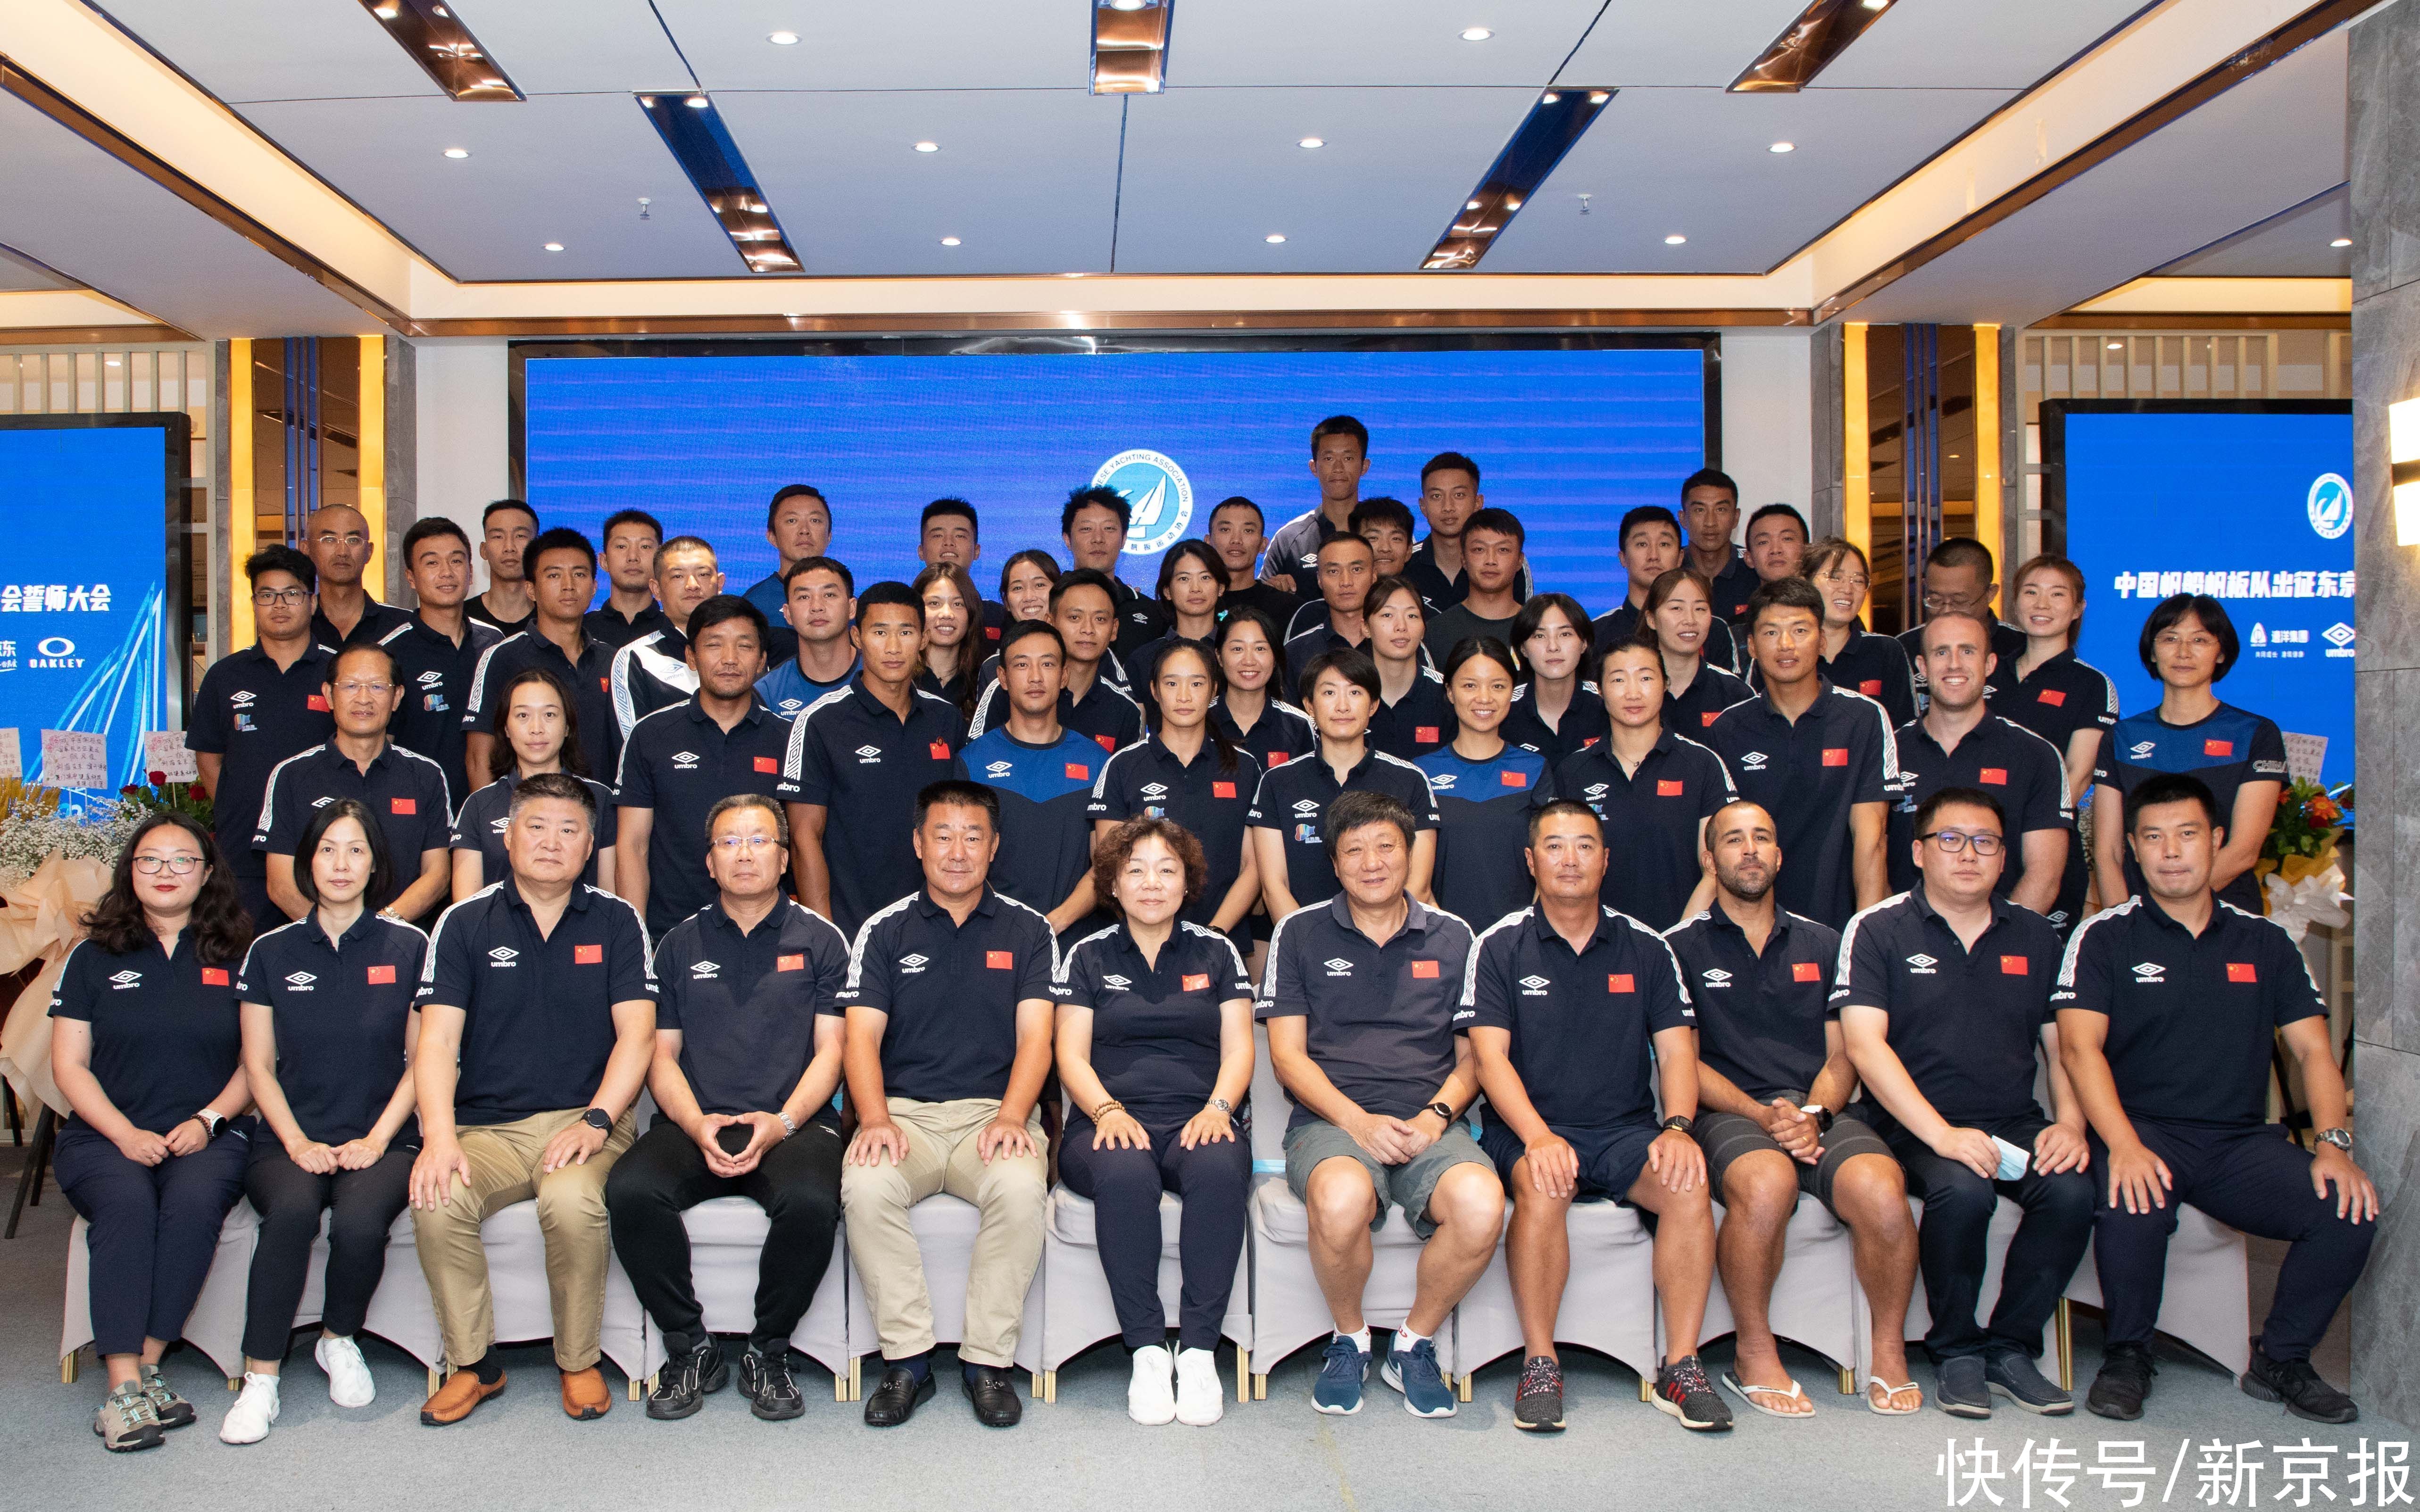 中国帆船帆板队举行誓师大会 女子帆板力争金牌 全网搜